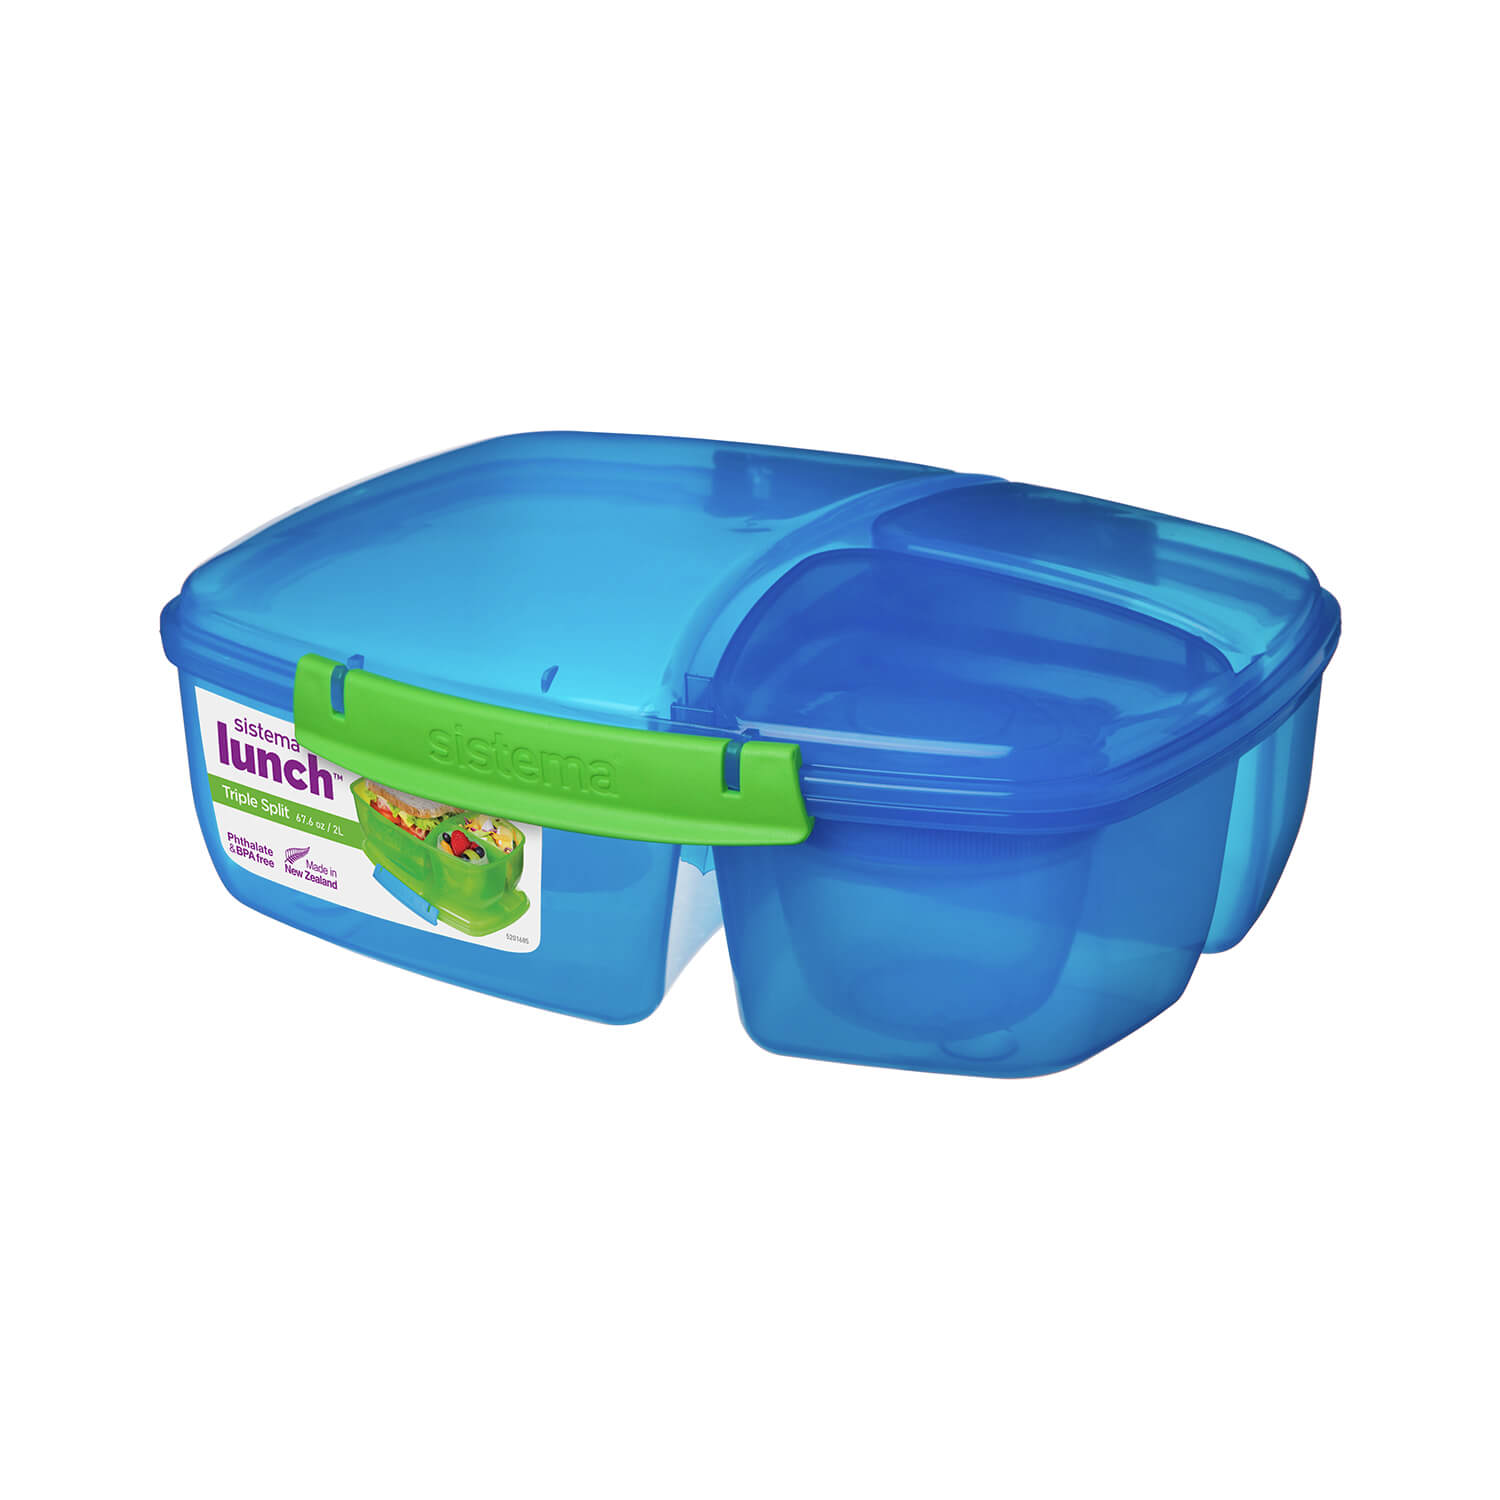 Sistema Lunchbox Triple Split, Frühstücksdose mit Joghurttopf, 2 L, blau